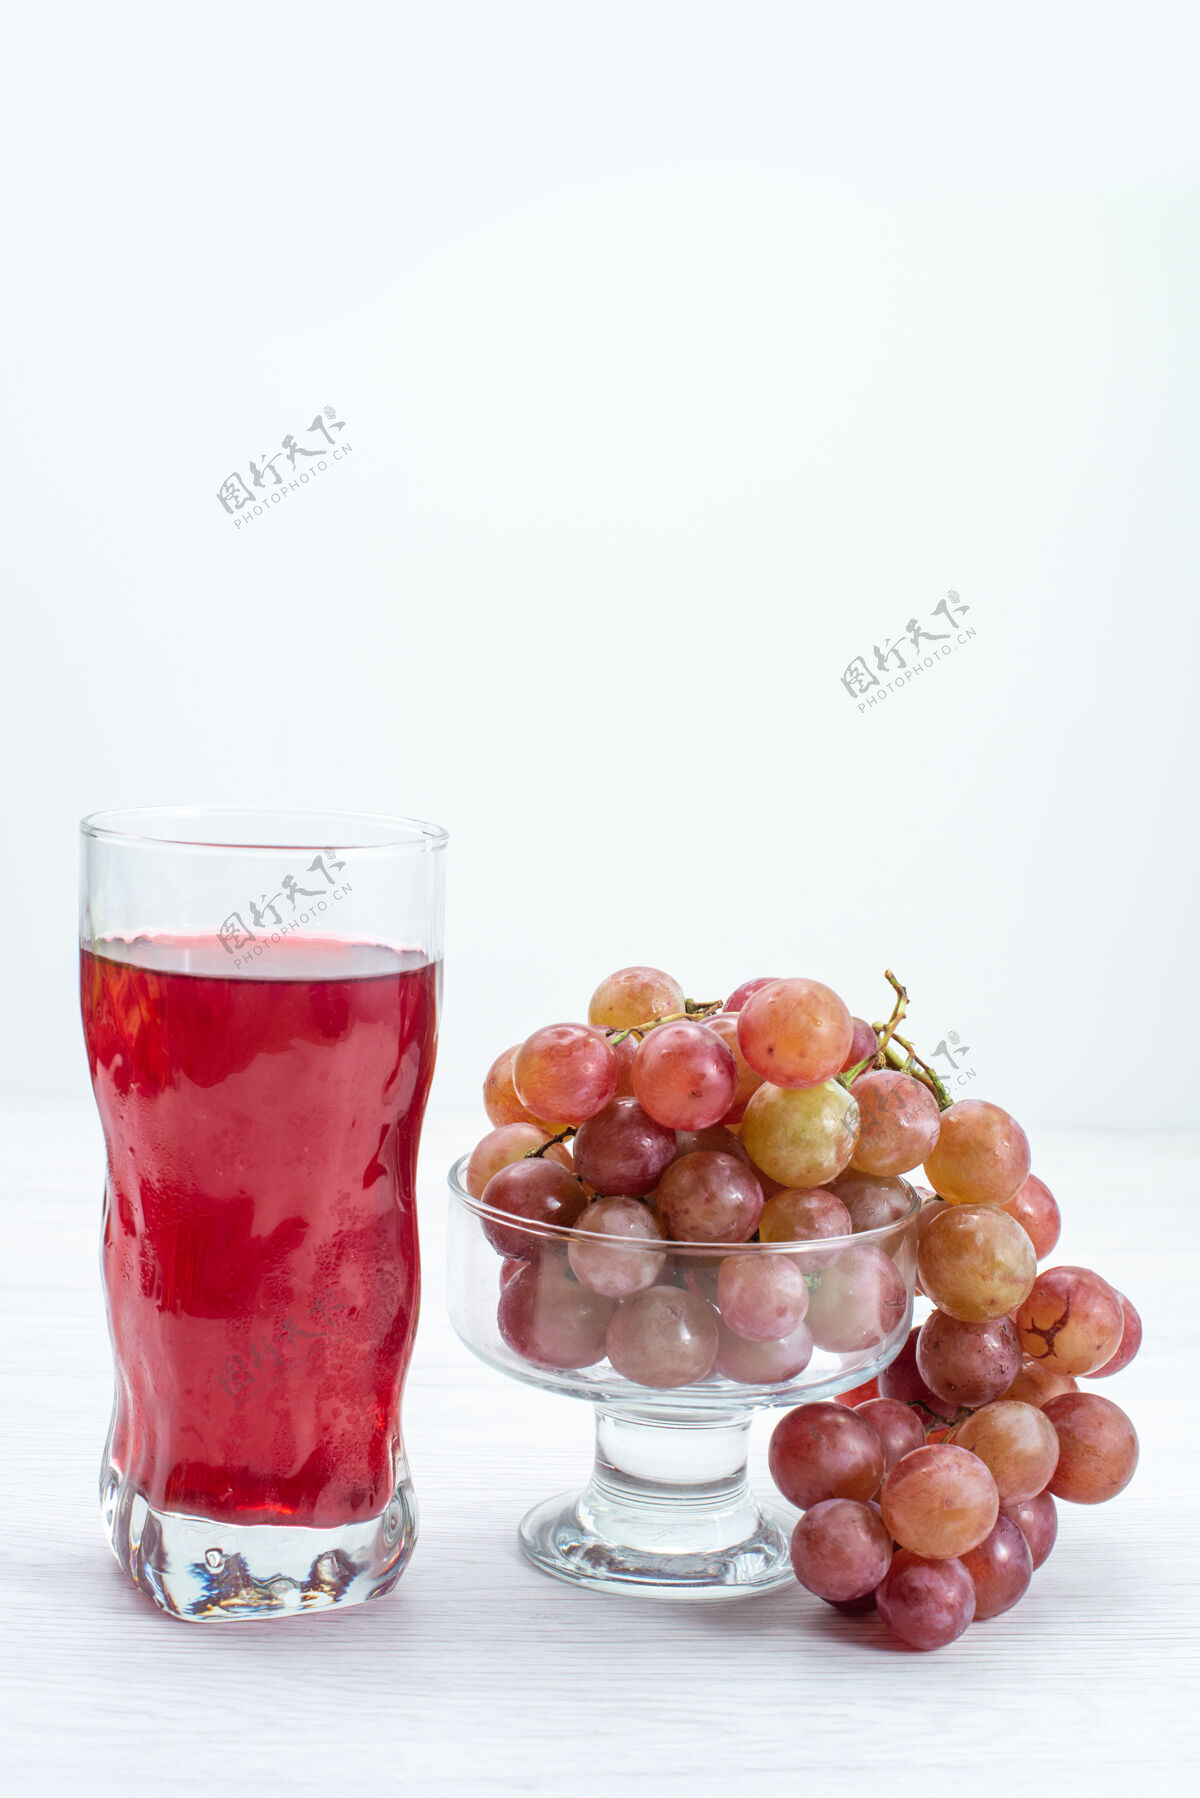 酸的正面图新鲜的酸葡萄酸而醇厚的果肉 白色表面上有果汁 新鲜的果酒树 植物醇厚葡萄酒水果葡萄